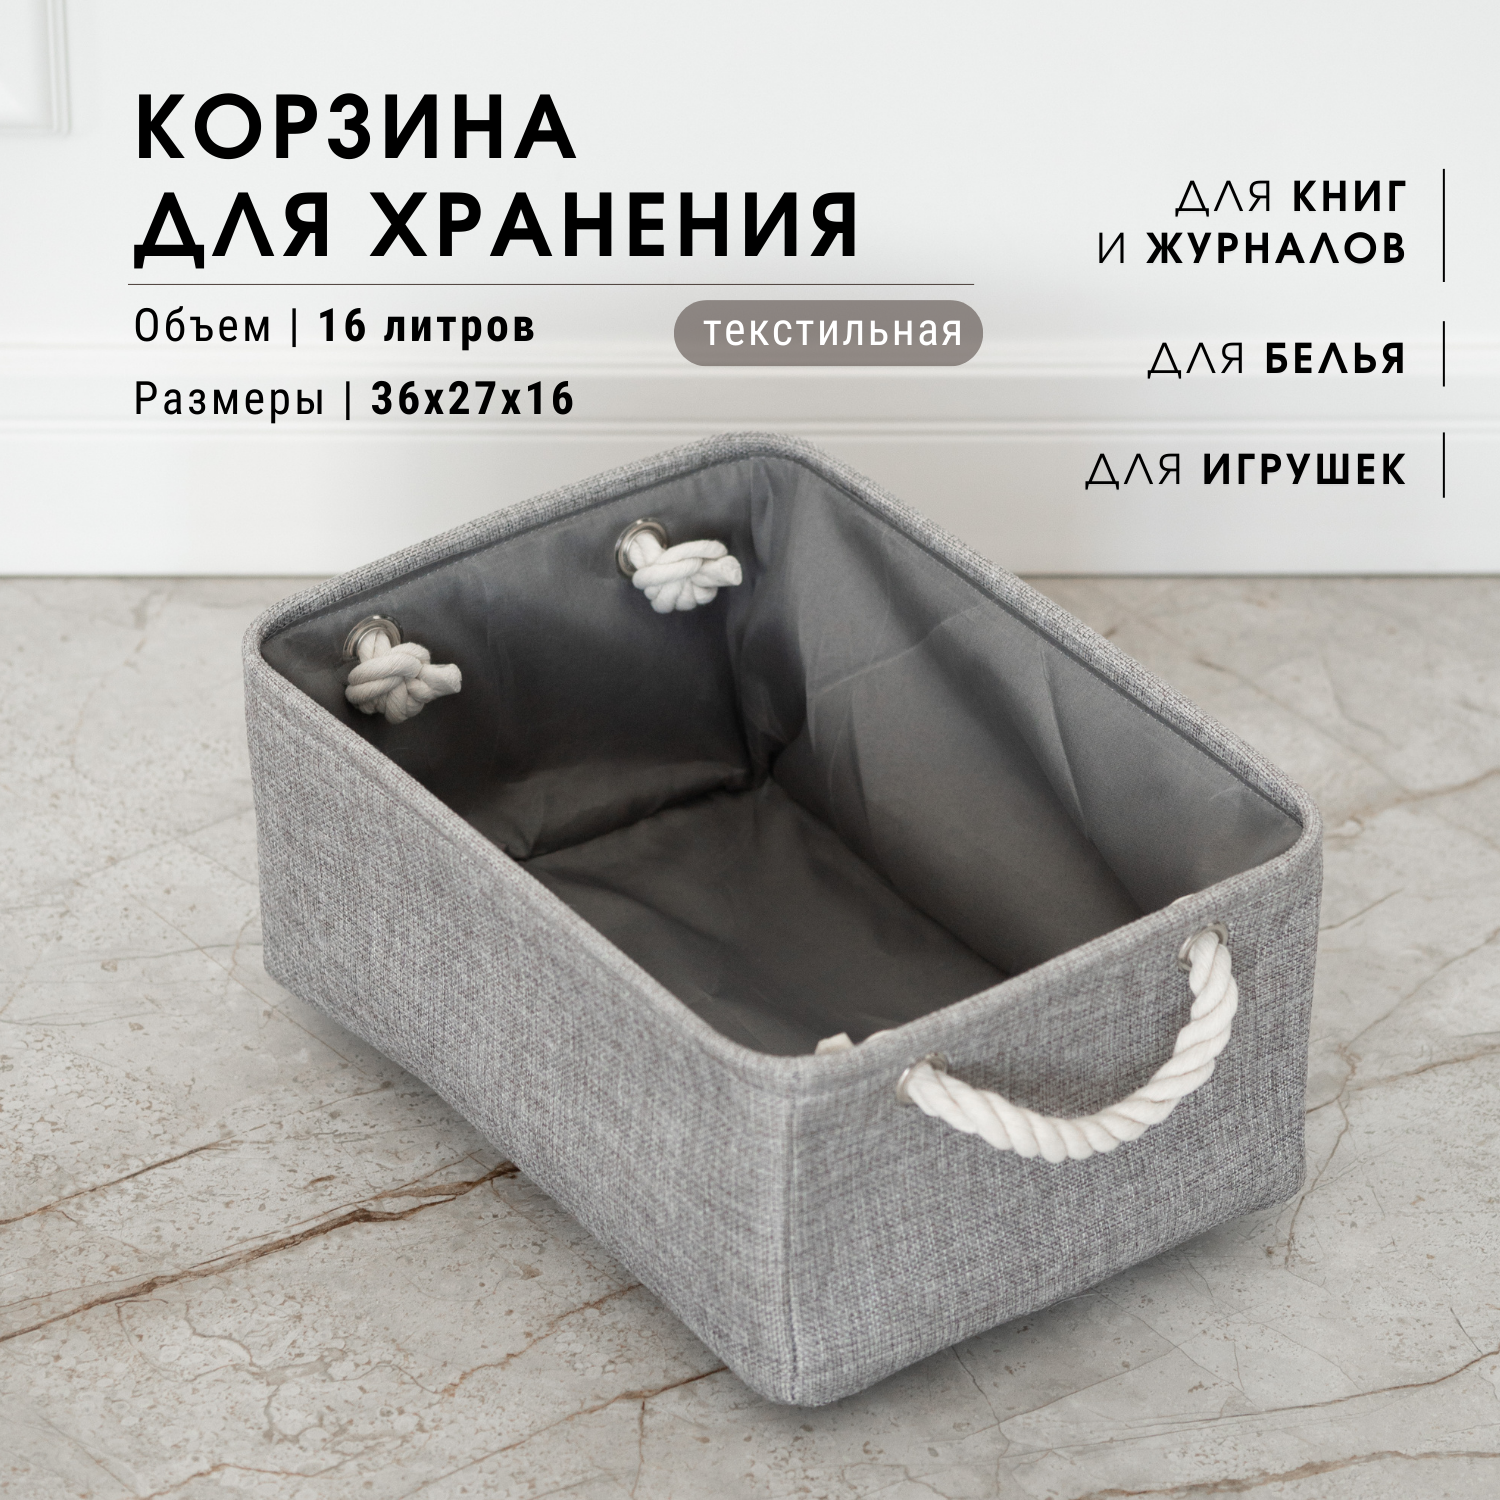 Текстильная корзина для хранения / HOMO / цвет: серый